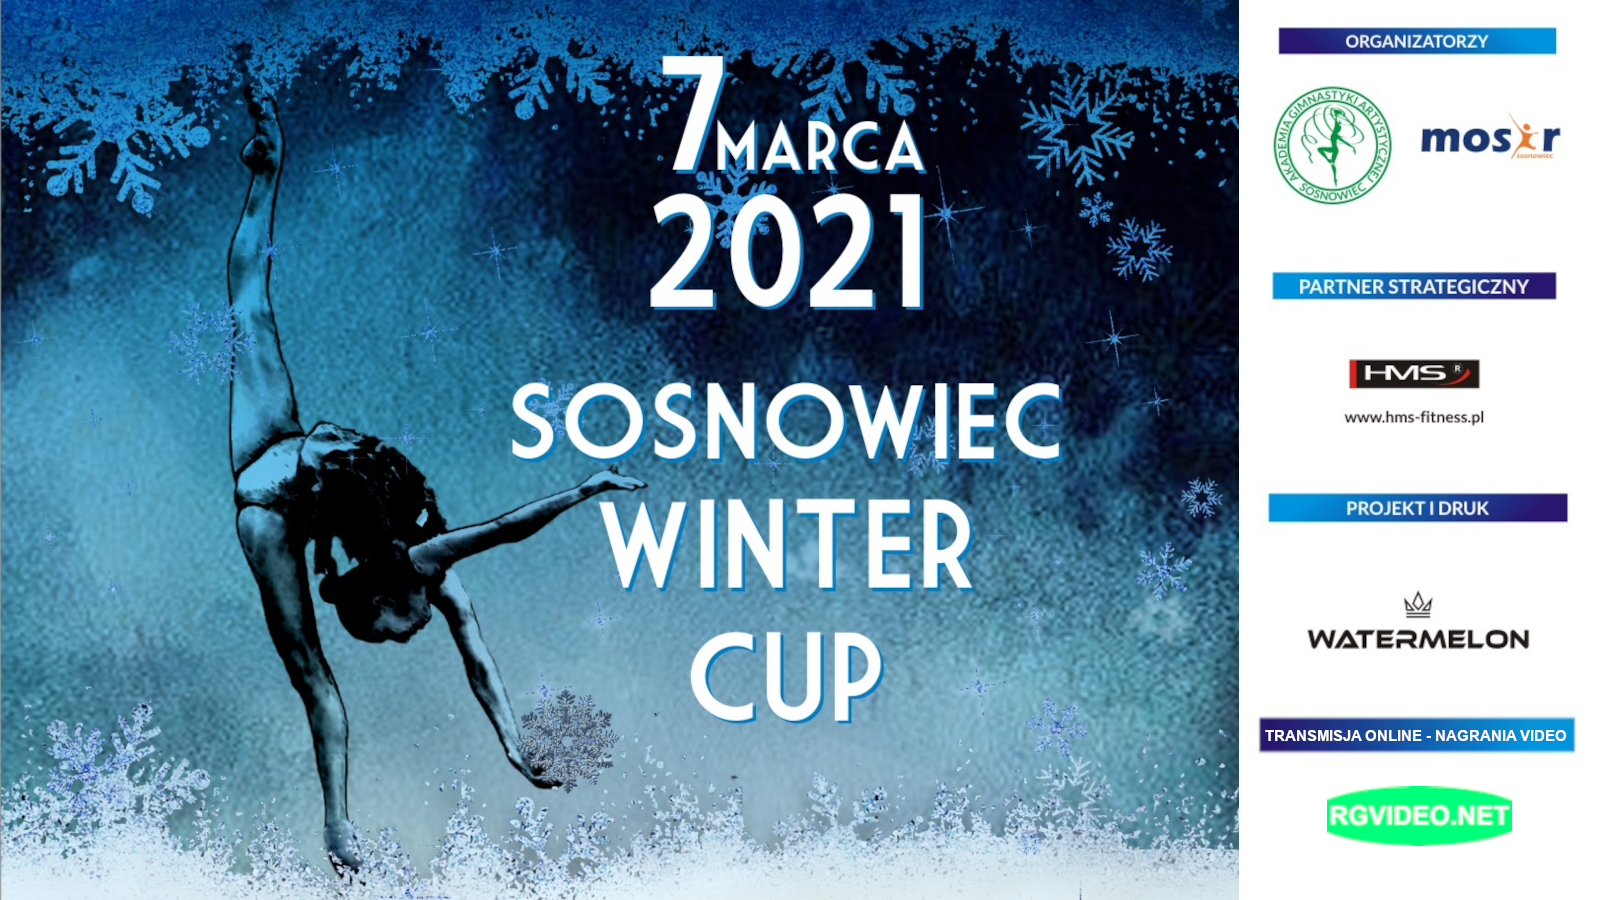 SOSNOWIEC WINTER CUP 2021